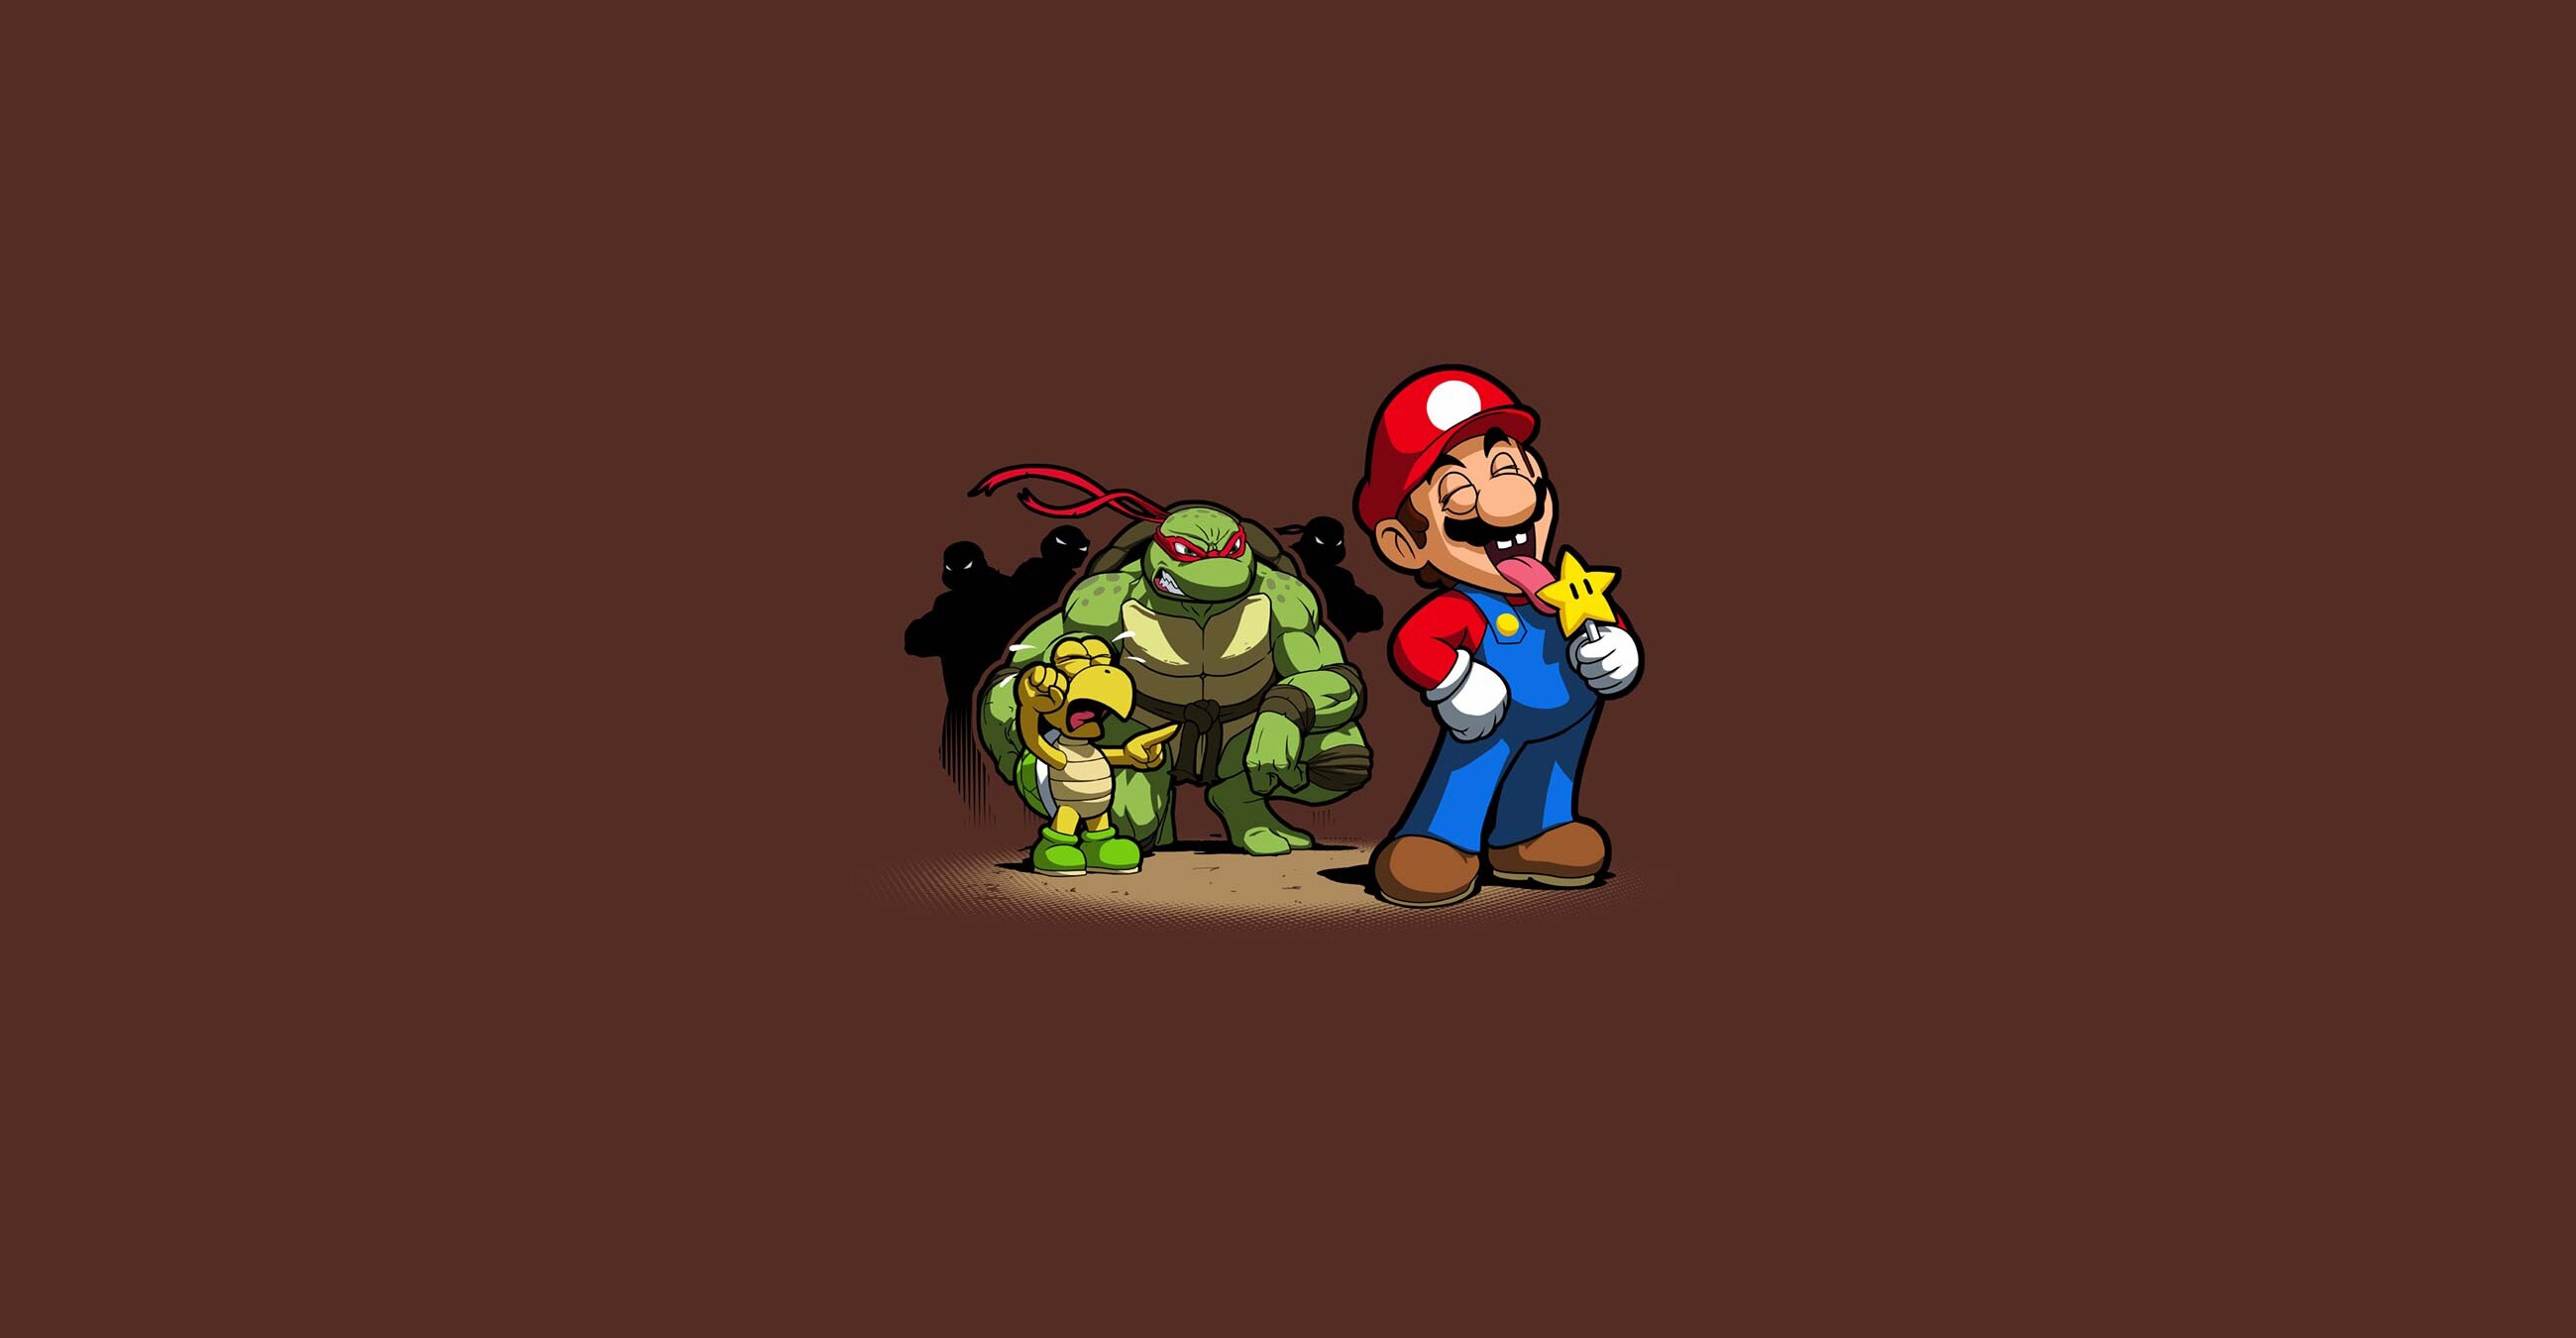 General 2600x1350 Teenage Mutant Ninja Turtles Super Mario video game art video games humor simple background brown brown background